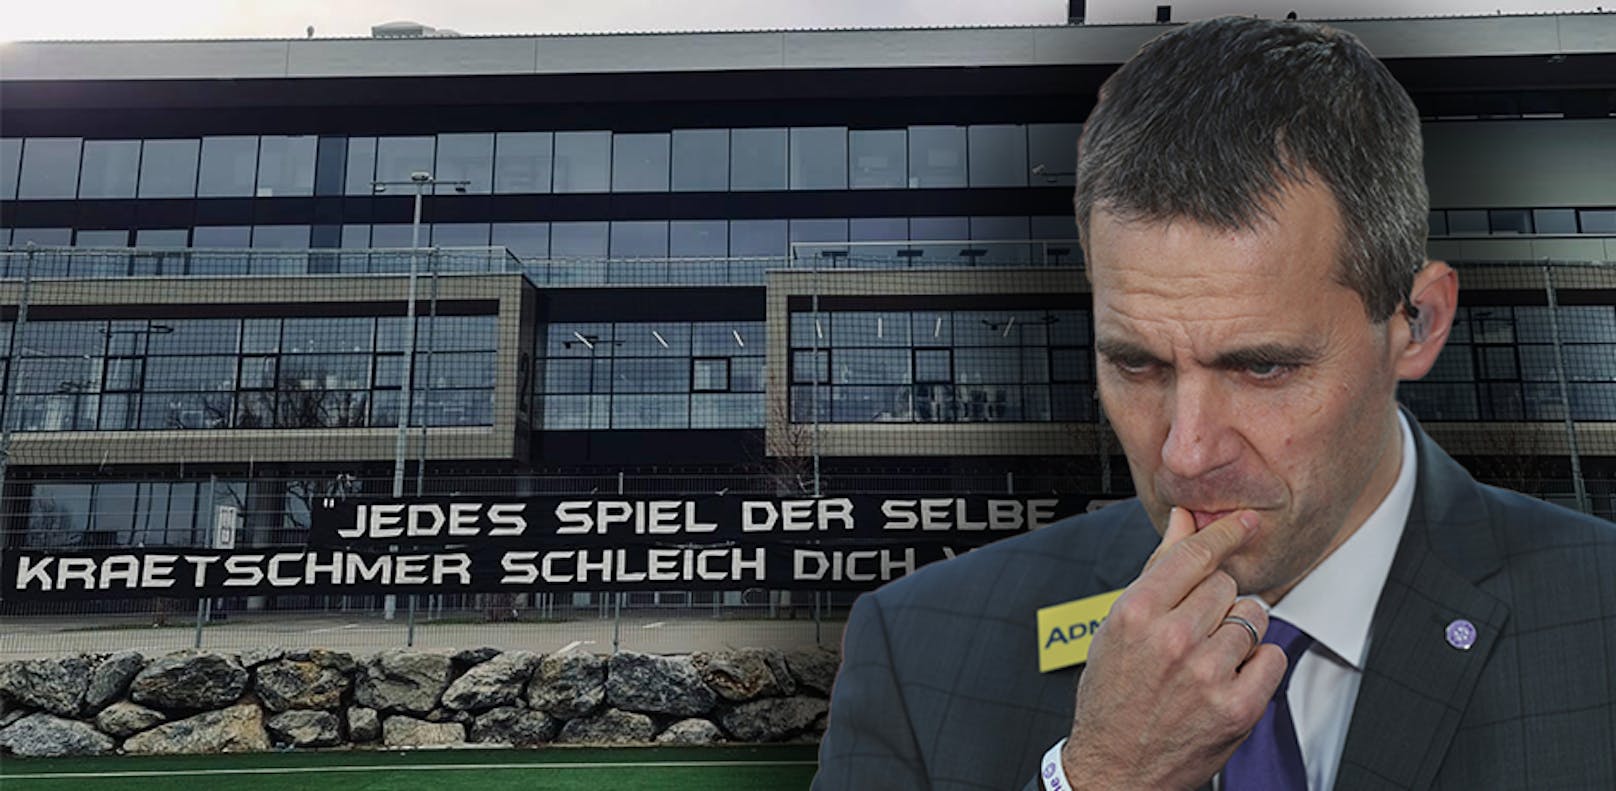 Die Fans fordern die Ablöse von AG-Boss Kraetschmer, der sich jetzt wehrt.&nbsp;